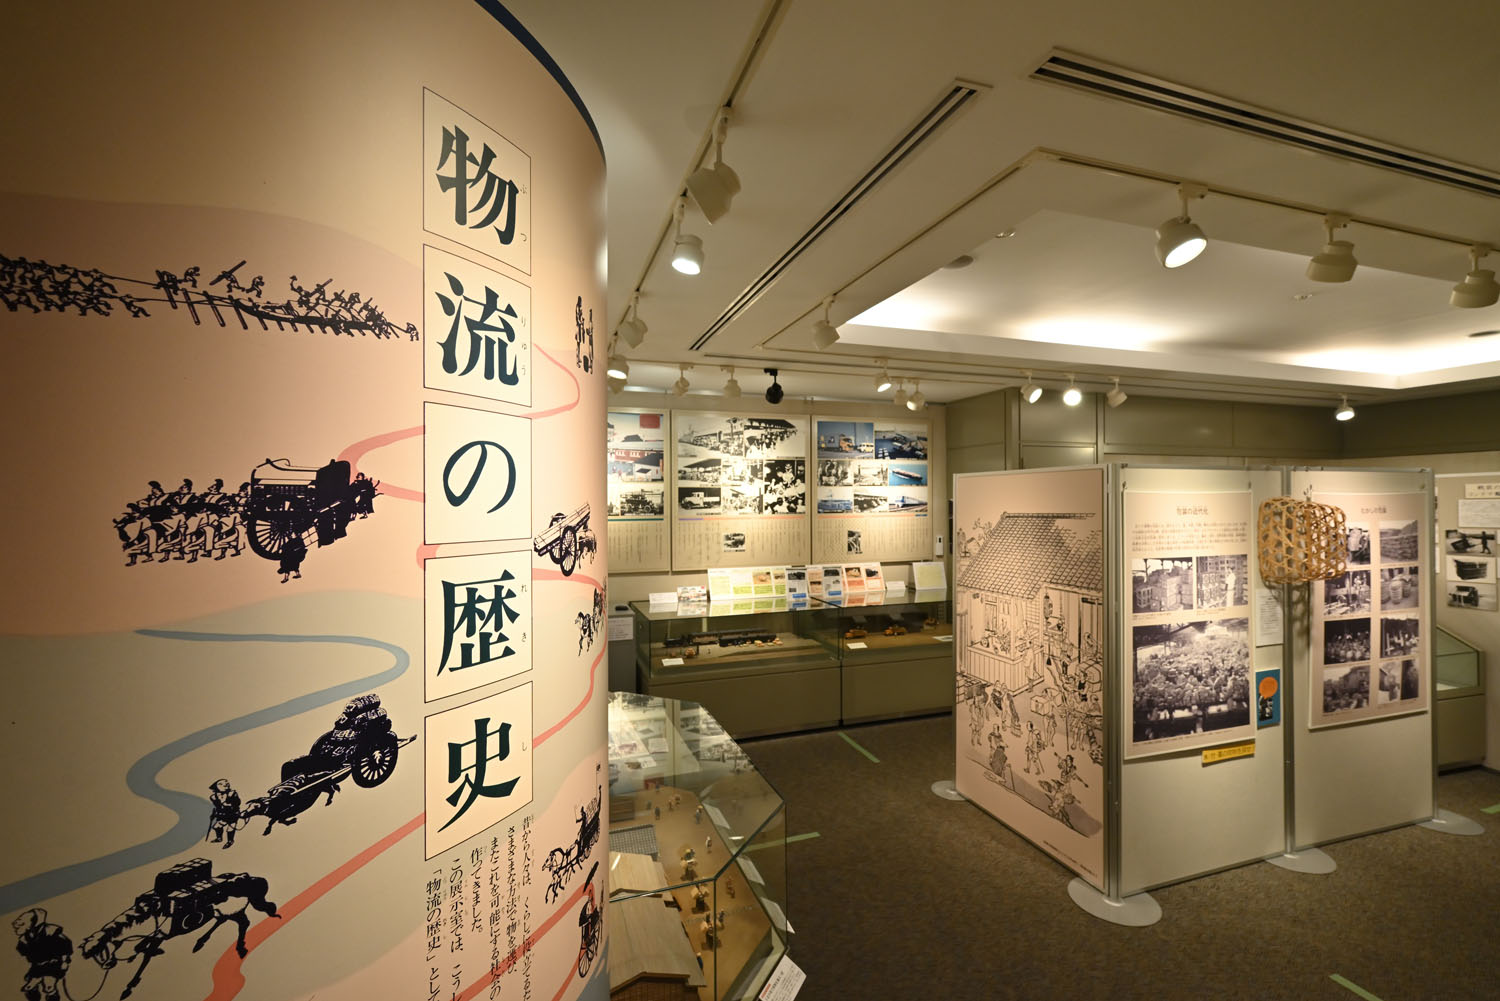 江戸末期の品川宿の模型から展示が始まる。